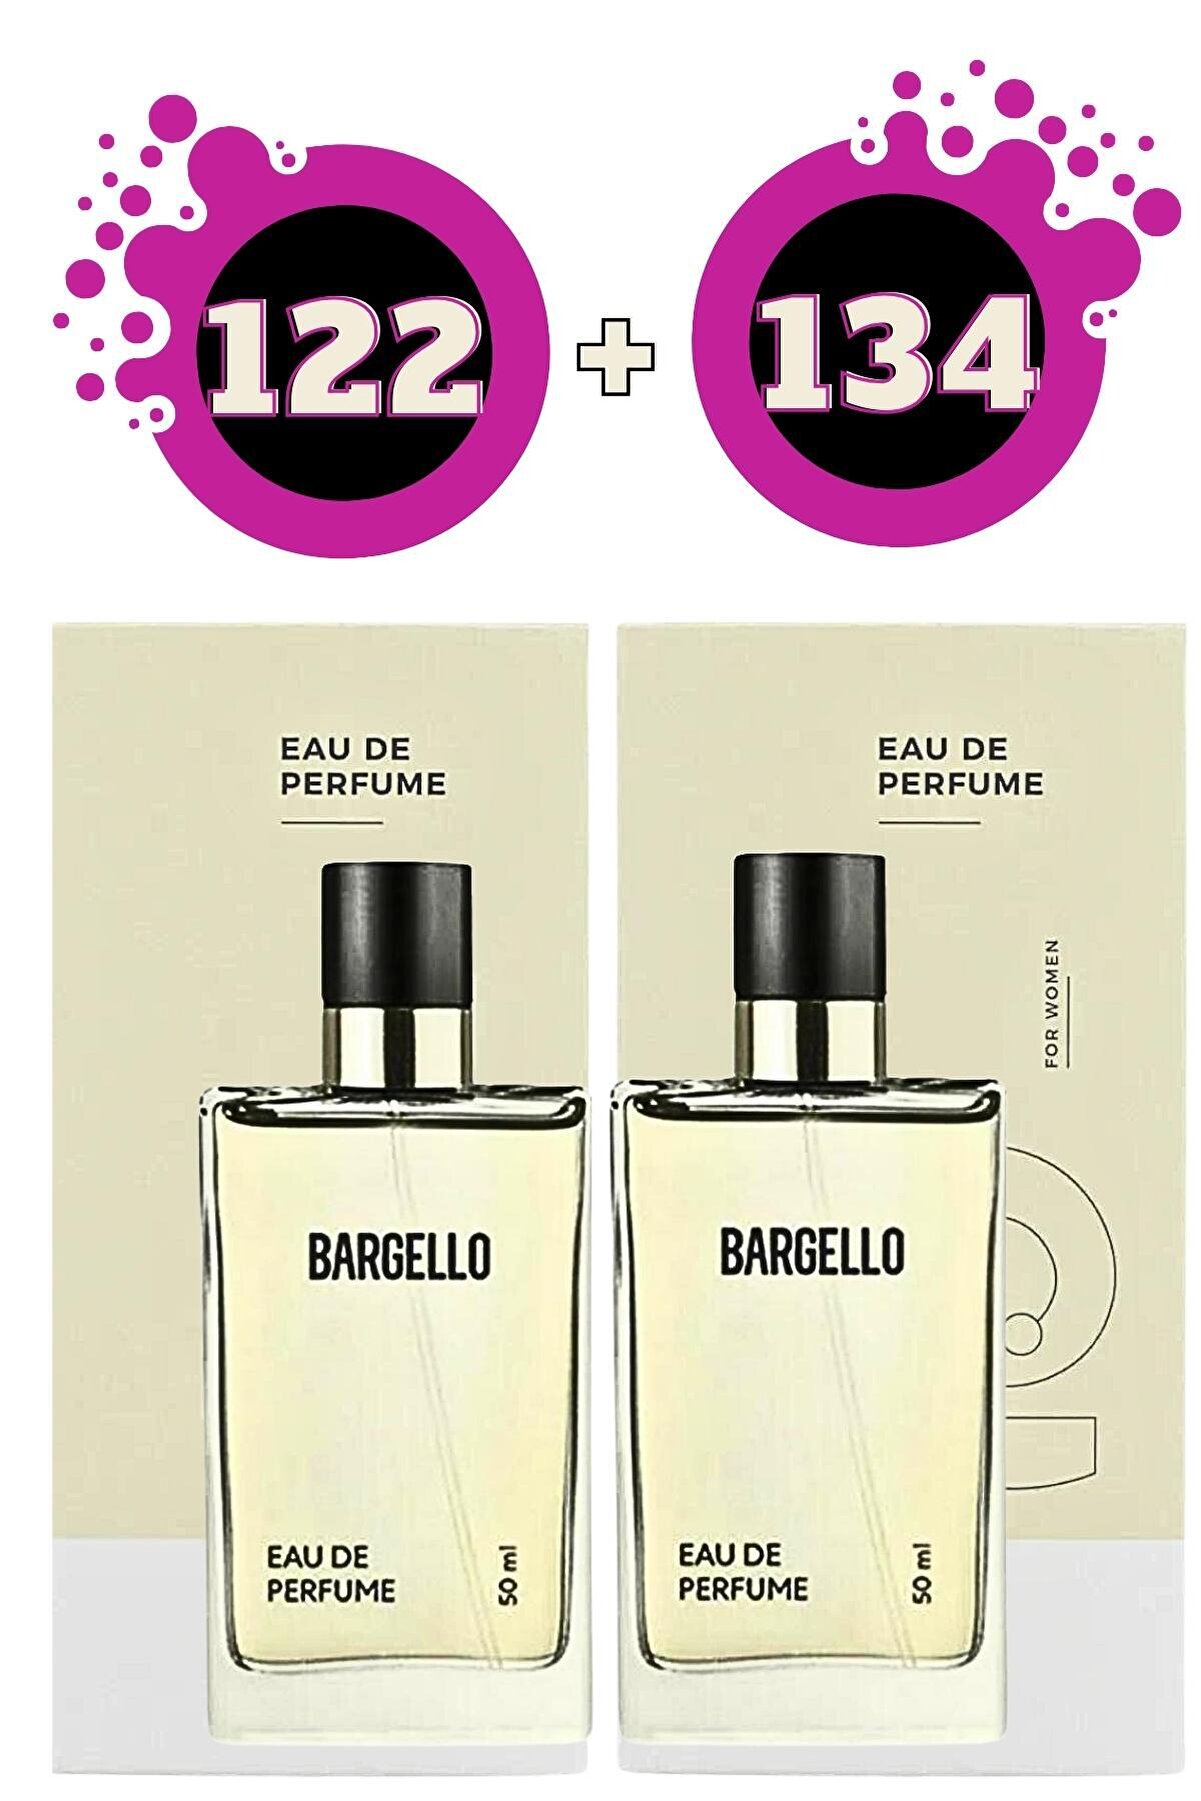 Bargello 122 Oriental Kadın 134 Oriental Kadın Parfüm Seti